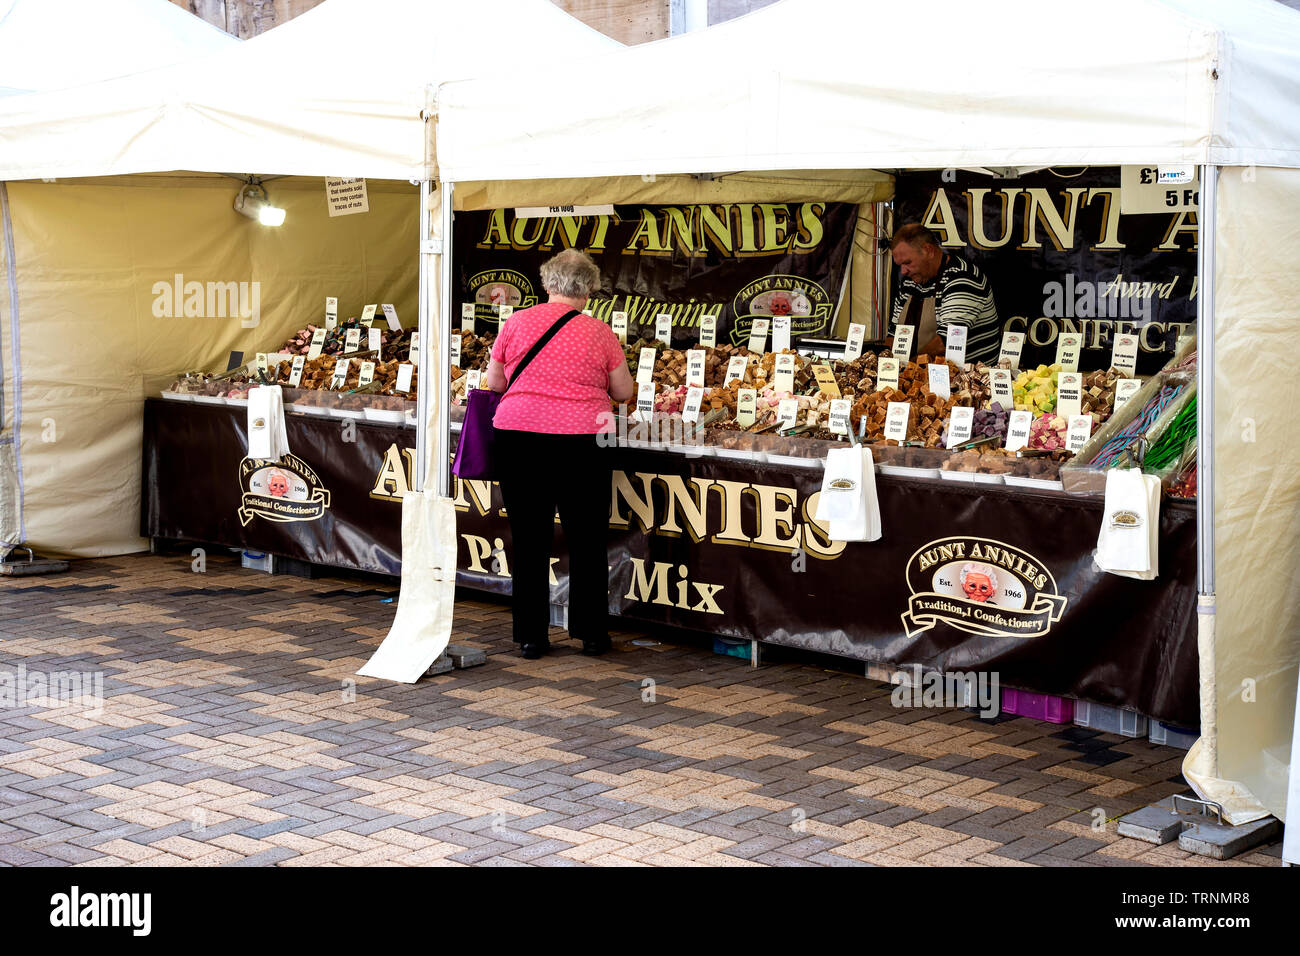 Lady kunden Besuch einer Straße Markt preisgekrönte Konditorei Stall wo aussuchen, Auswahl verfügbar sind, in West Yorkshire Stockfoto